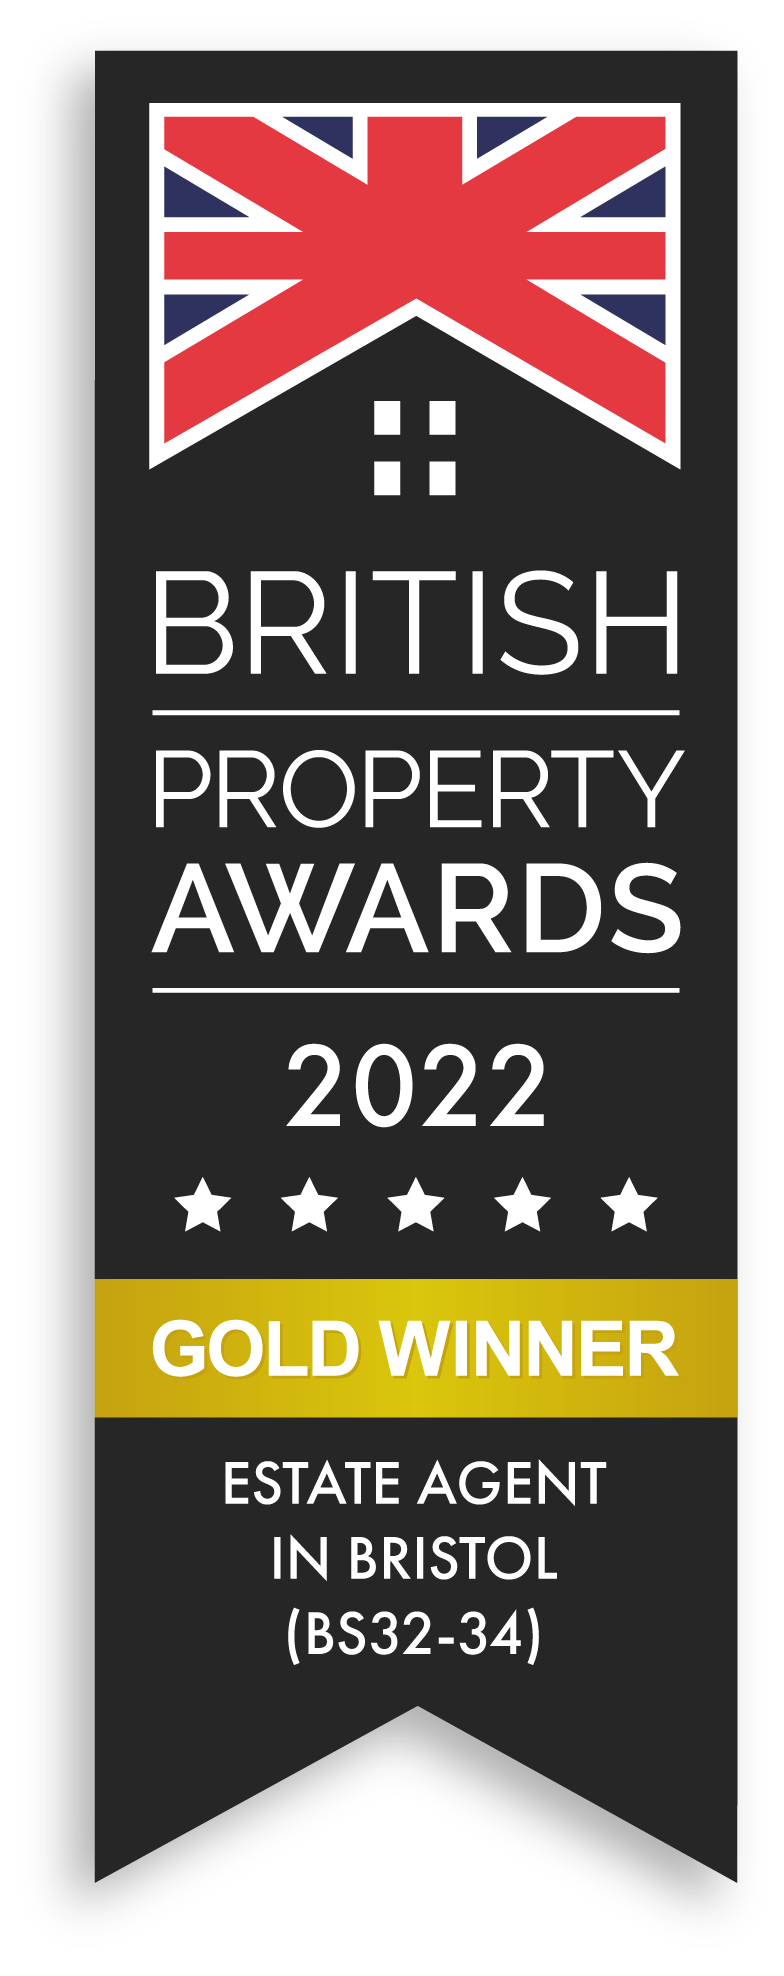 british property awards